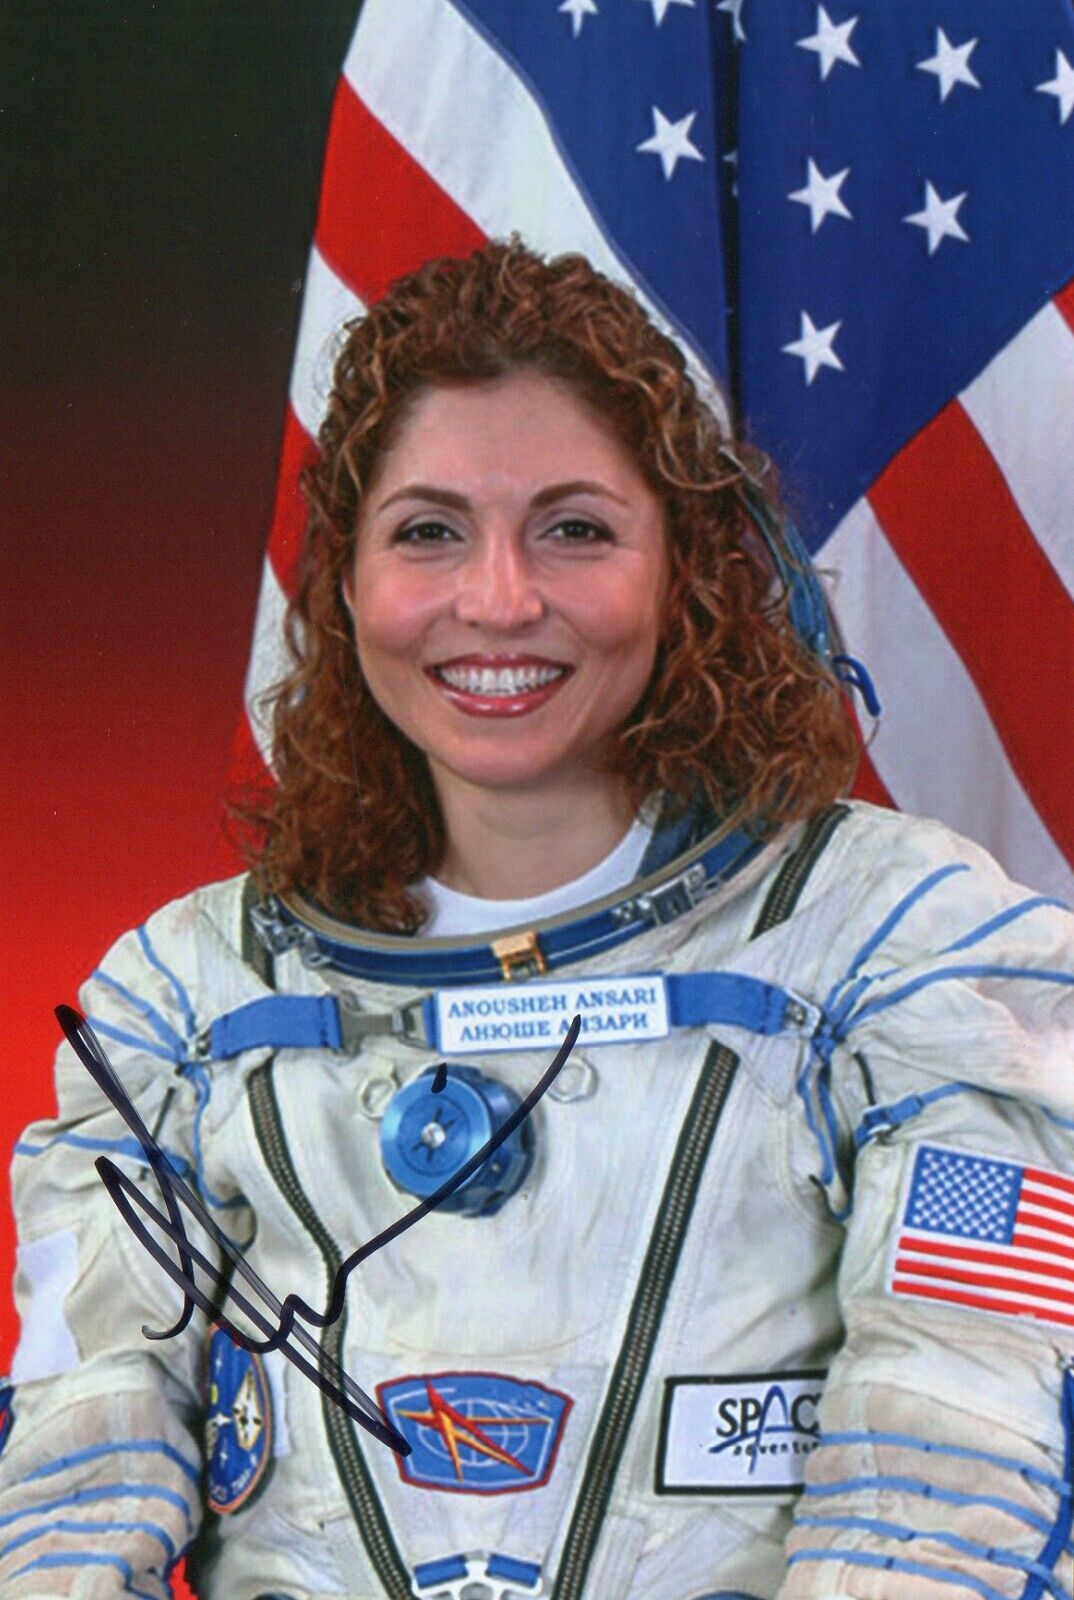 4x6 Original Autographed Photo of Iranian Astronaut Anousheh Ansari